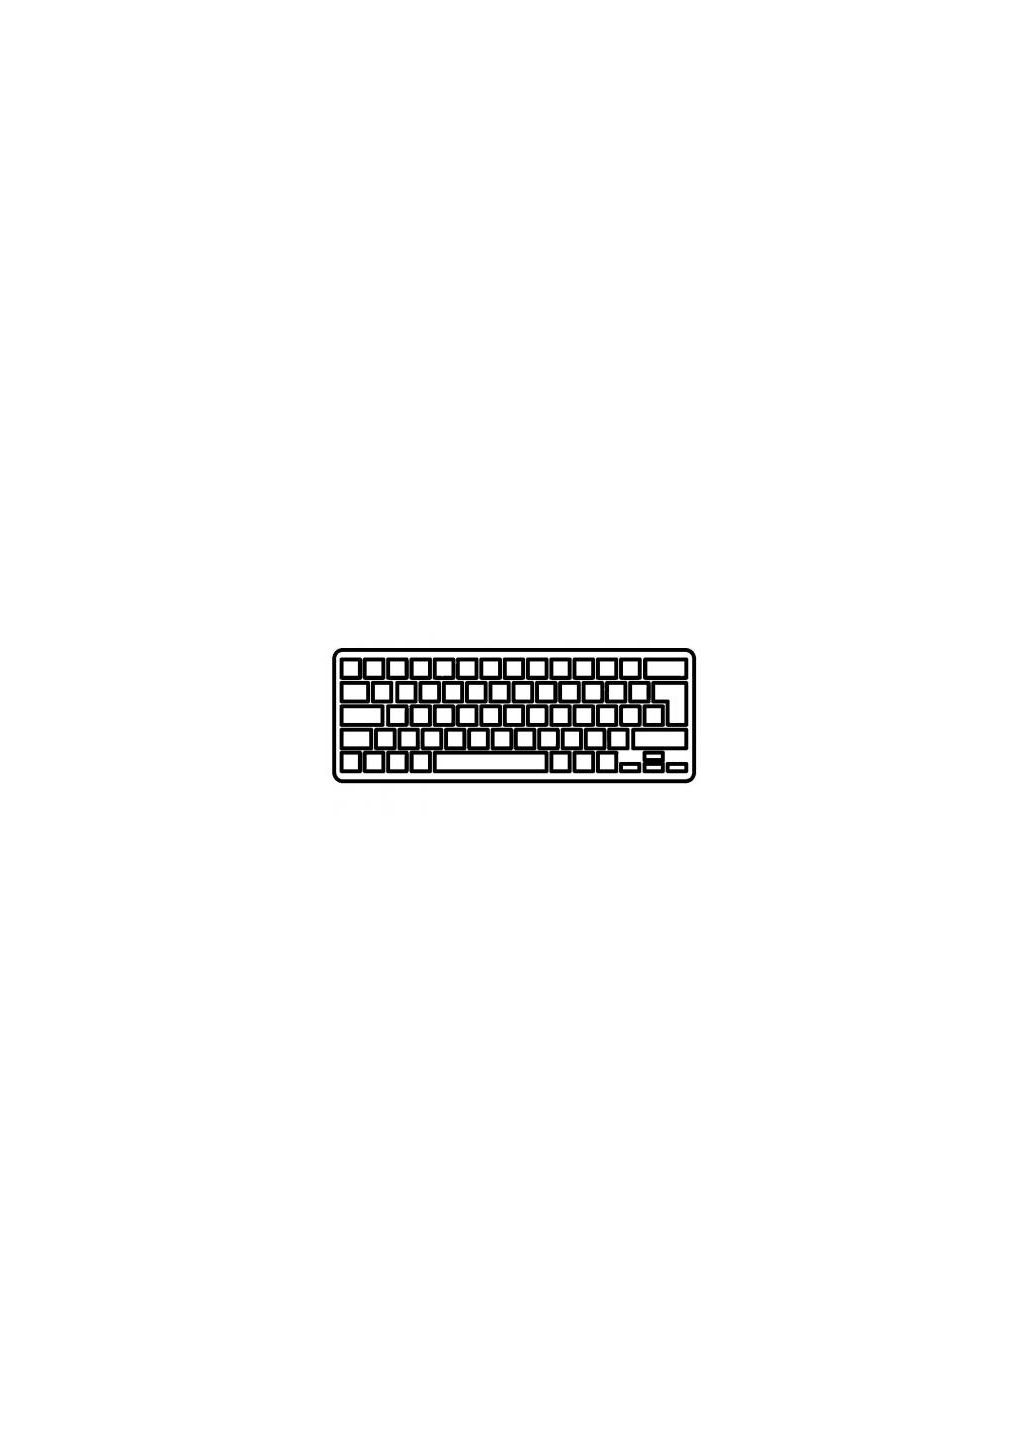 Клавиатура ноутбука ThinkPad E330/E430 Series черная с черной рамкой UA (A43609) Lenovo thinkpad e330/e430 series черная с черной рамкой т (276707025)